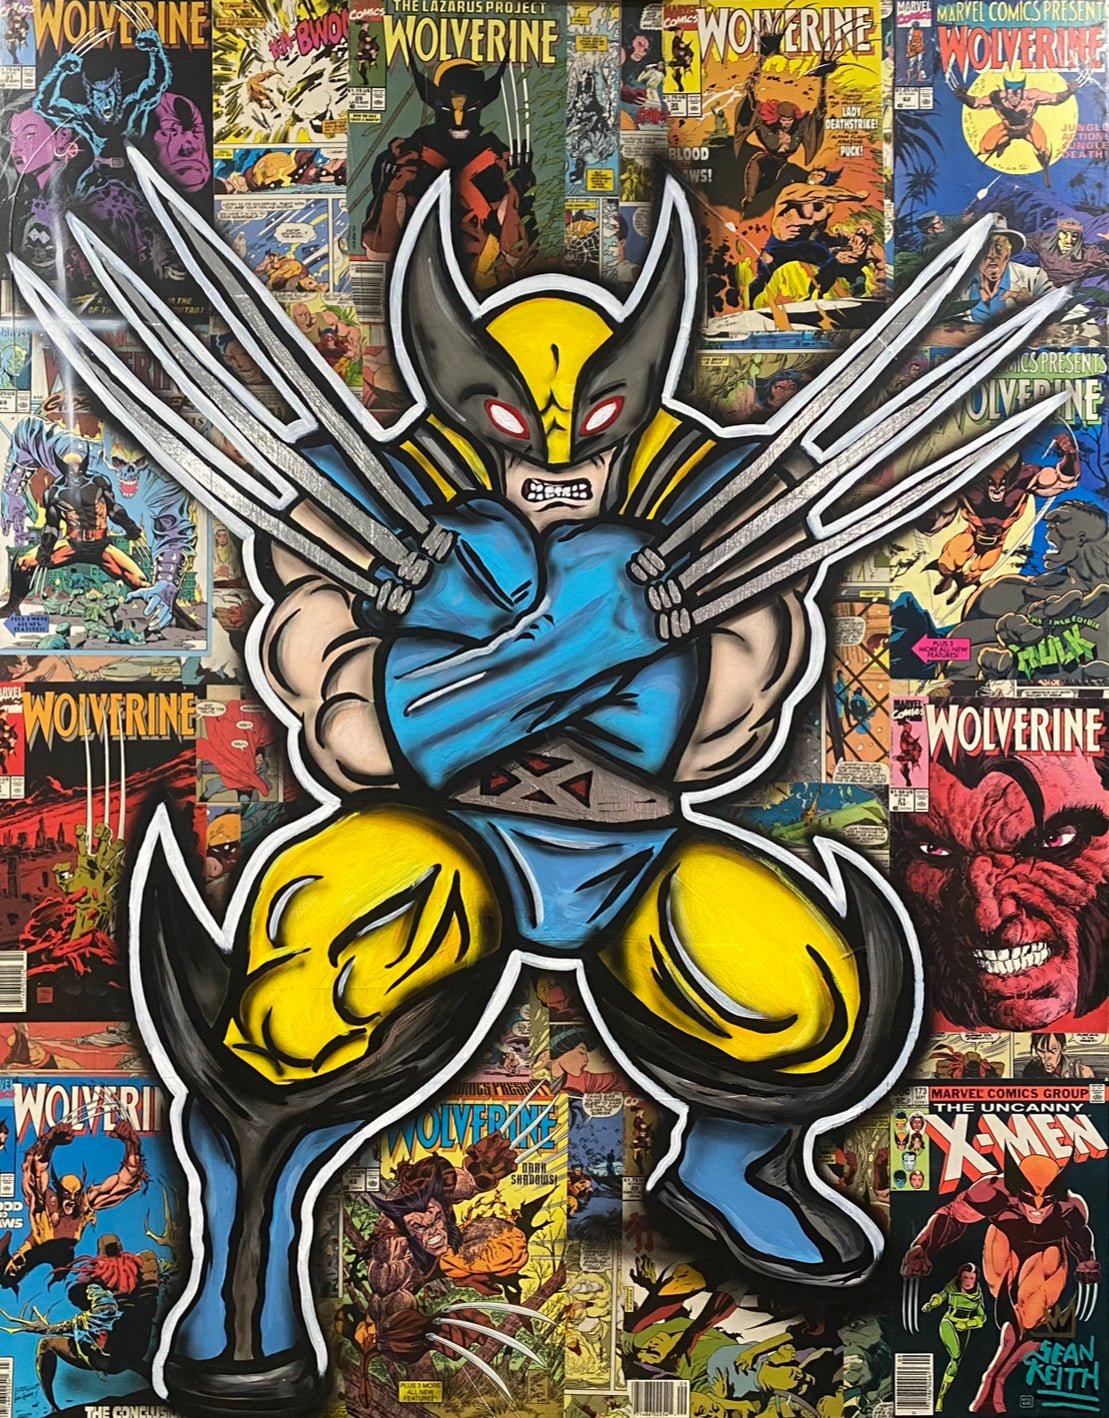 Wolverine the G